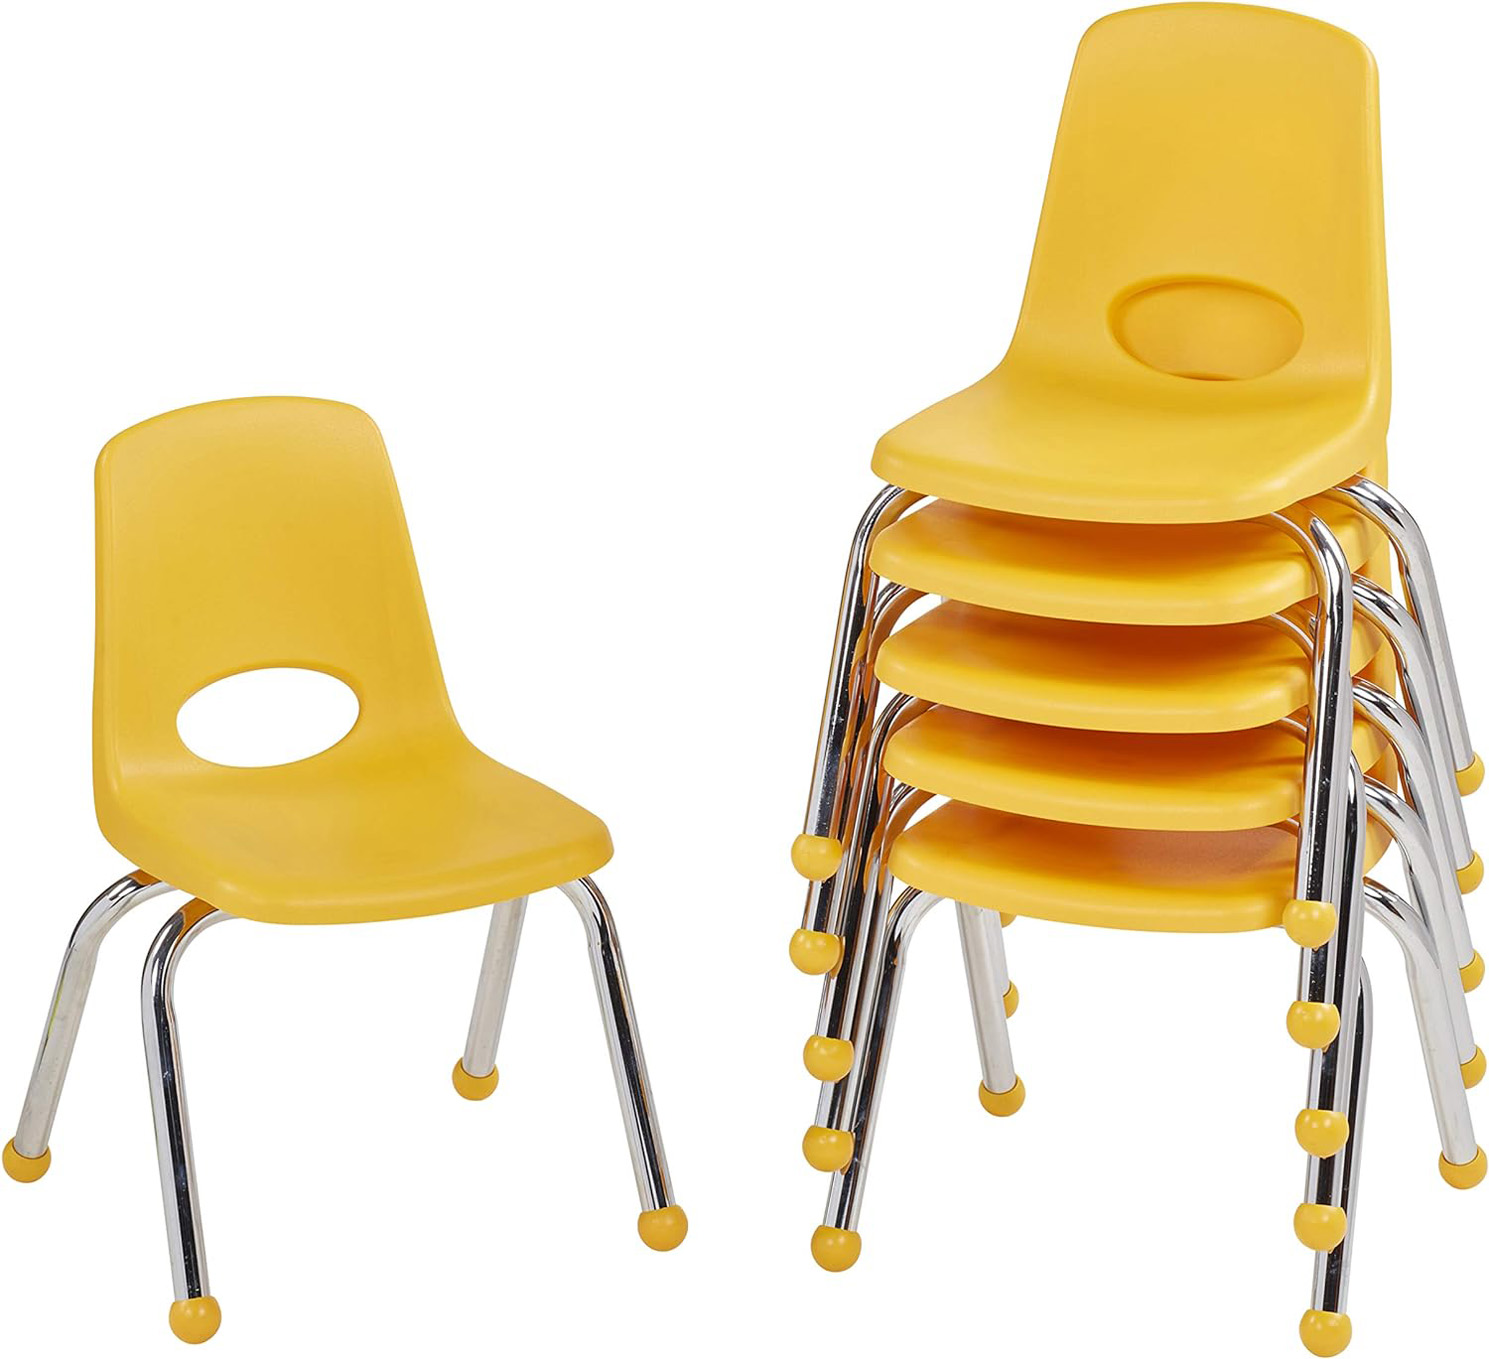 FDP 12″ School Stack Chair